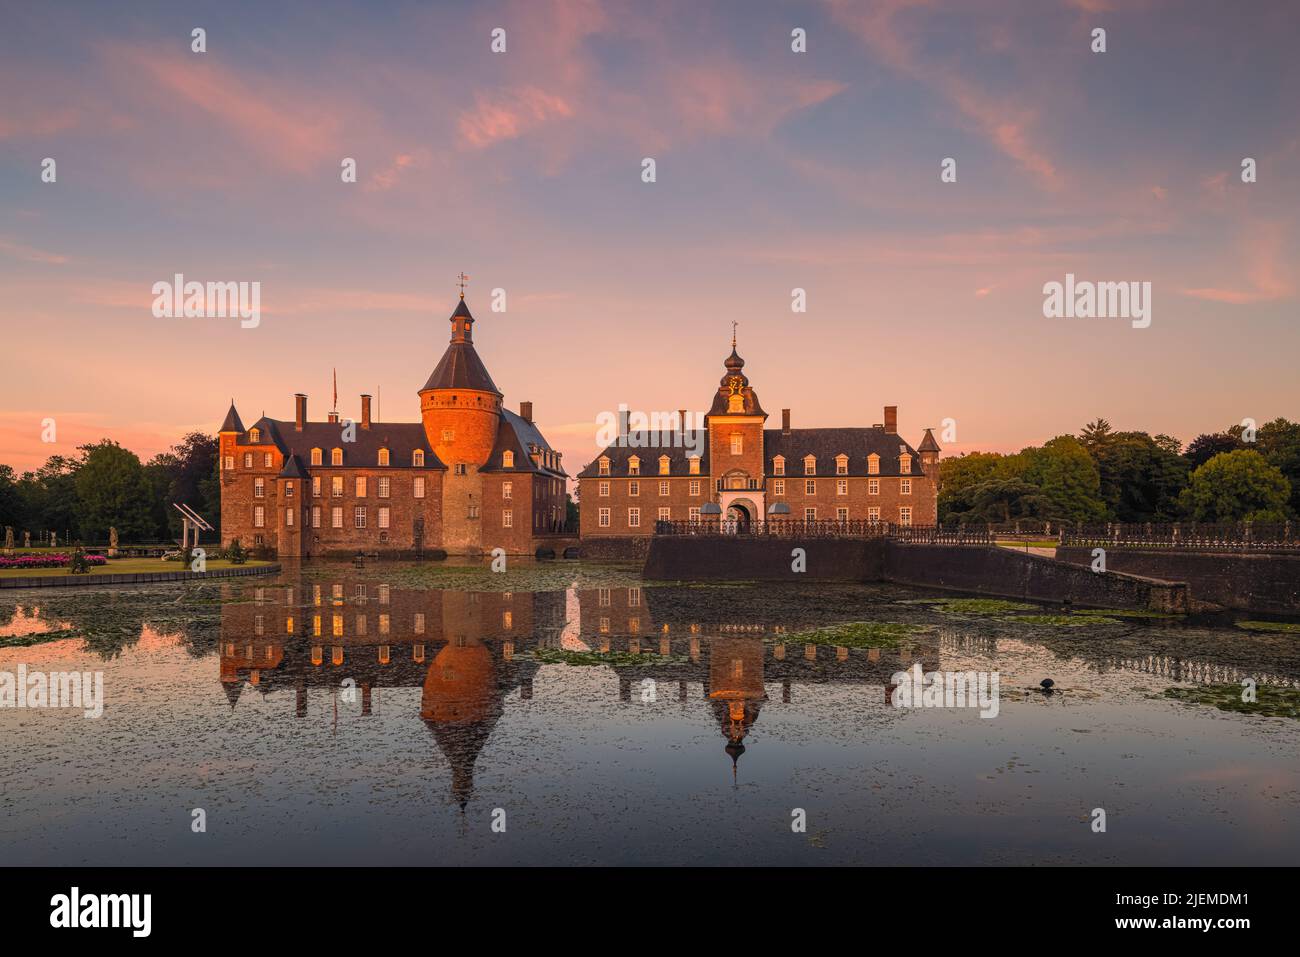 In Deutschland, in der Nähe der niederländischen Grenze, befindet sich das Wasserschloss Anholt, eines der wenigen privaten Schlösser Nordrhein-Westfalens. Es erscheint zuerst Stockfoto